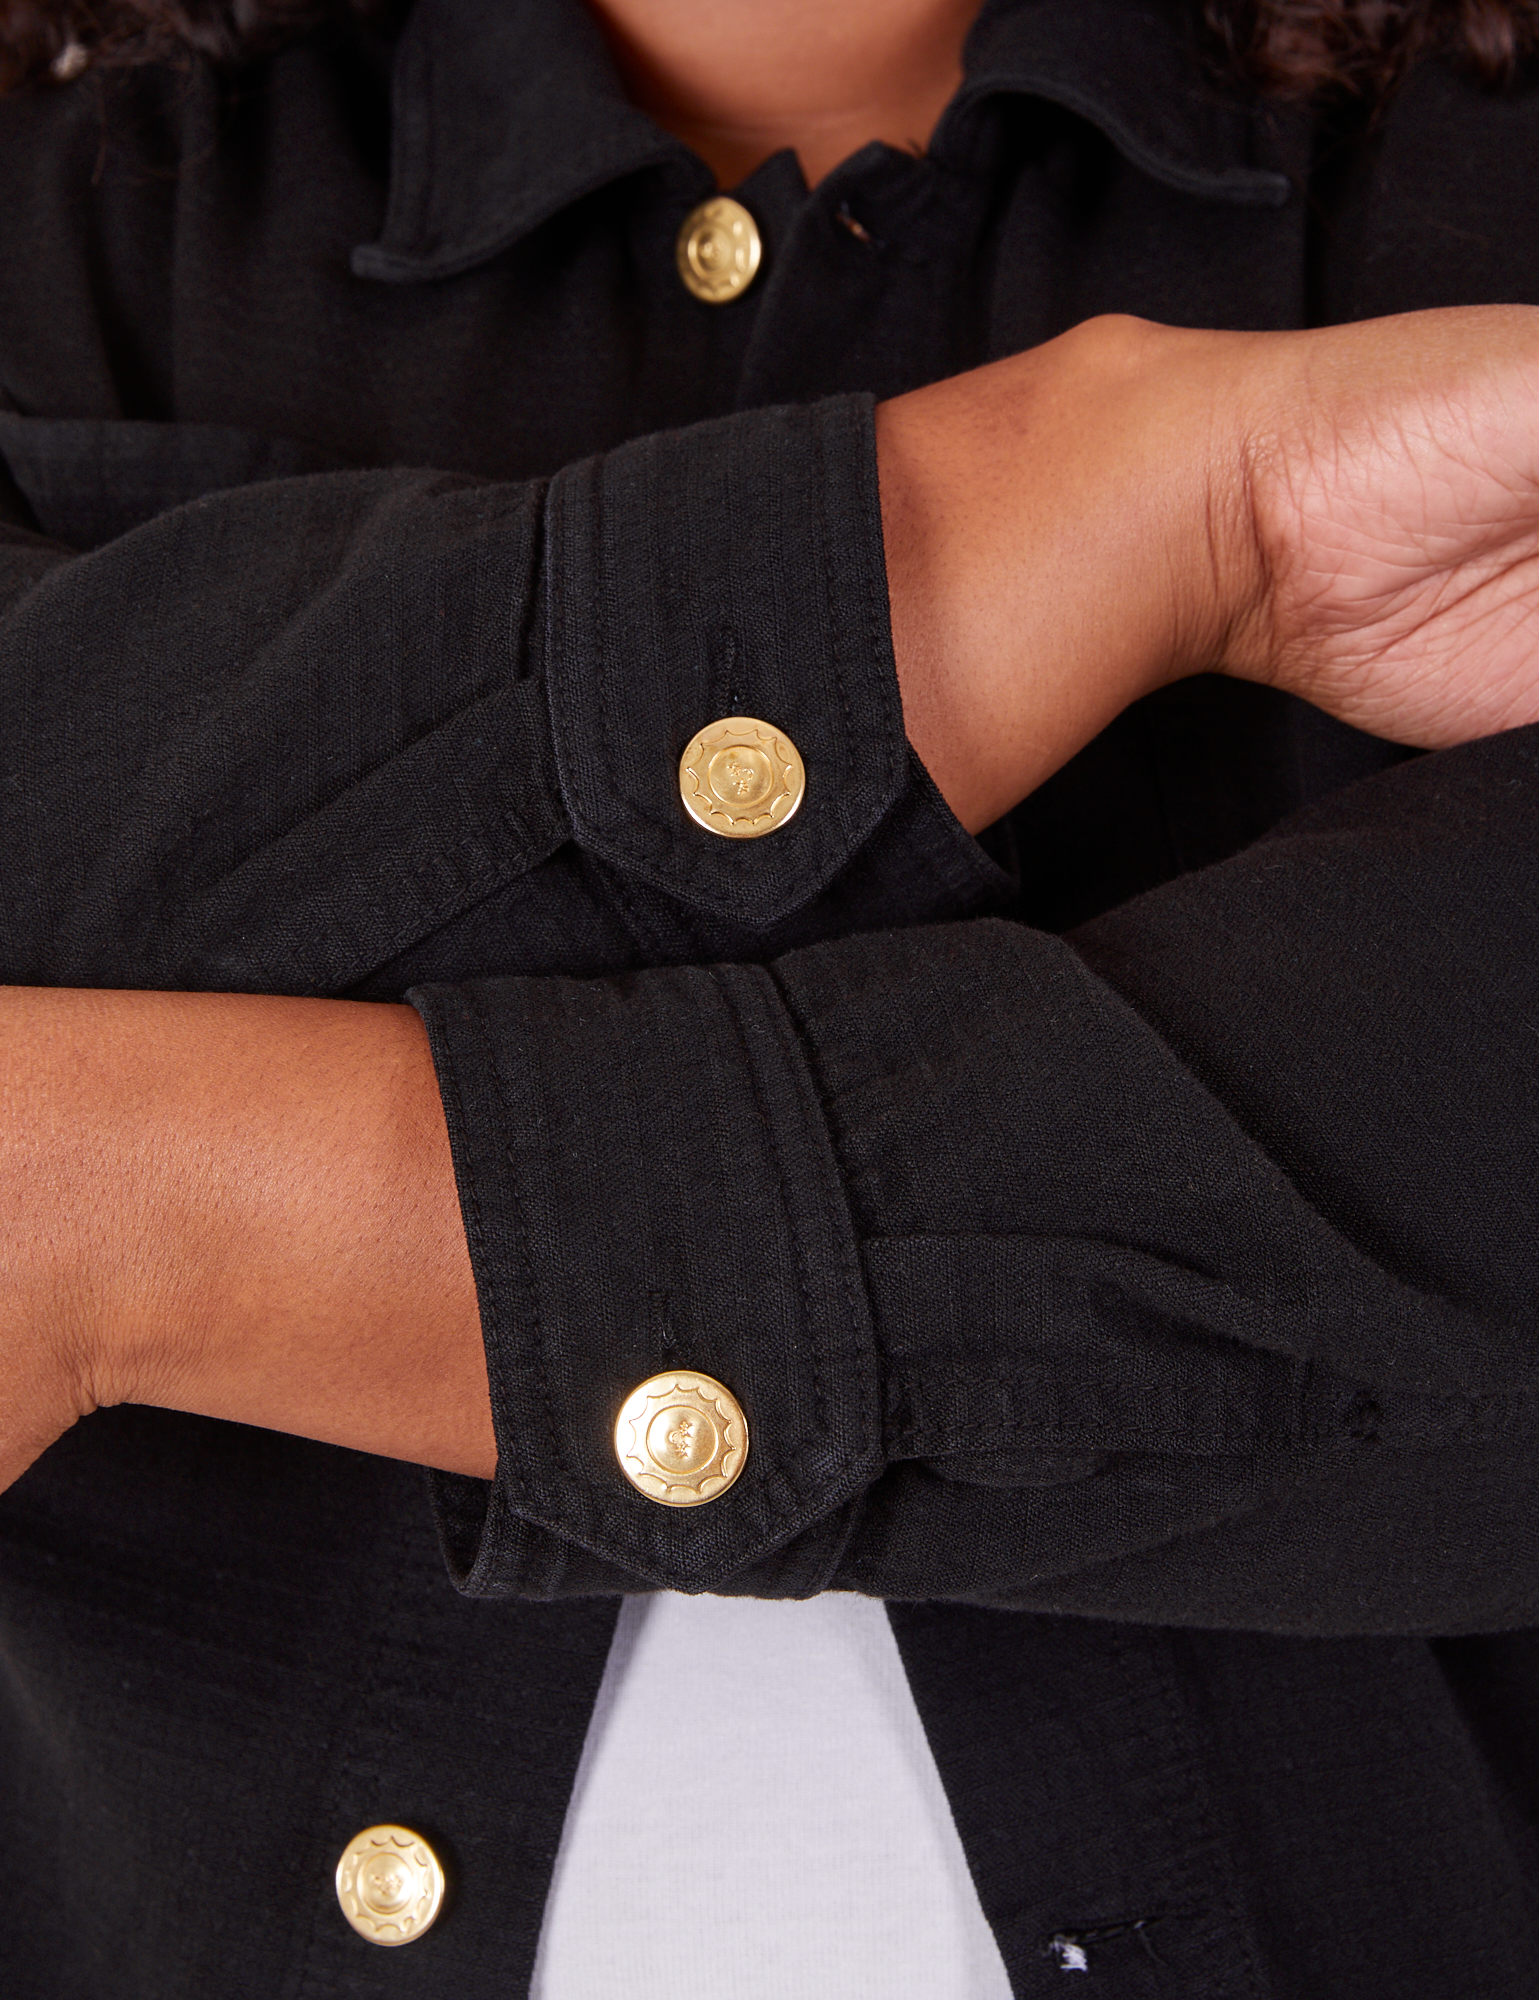 Field Coat in Basic Black sleeve cuff close up